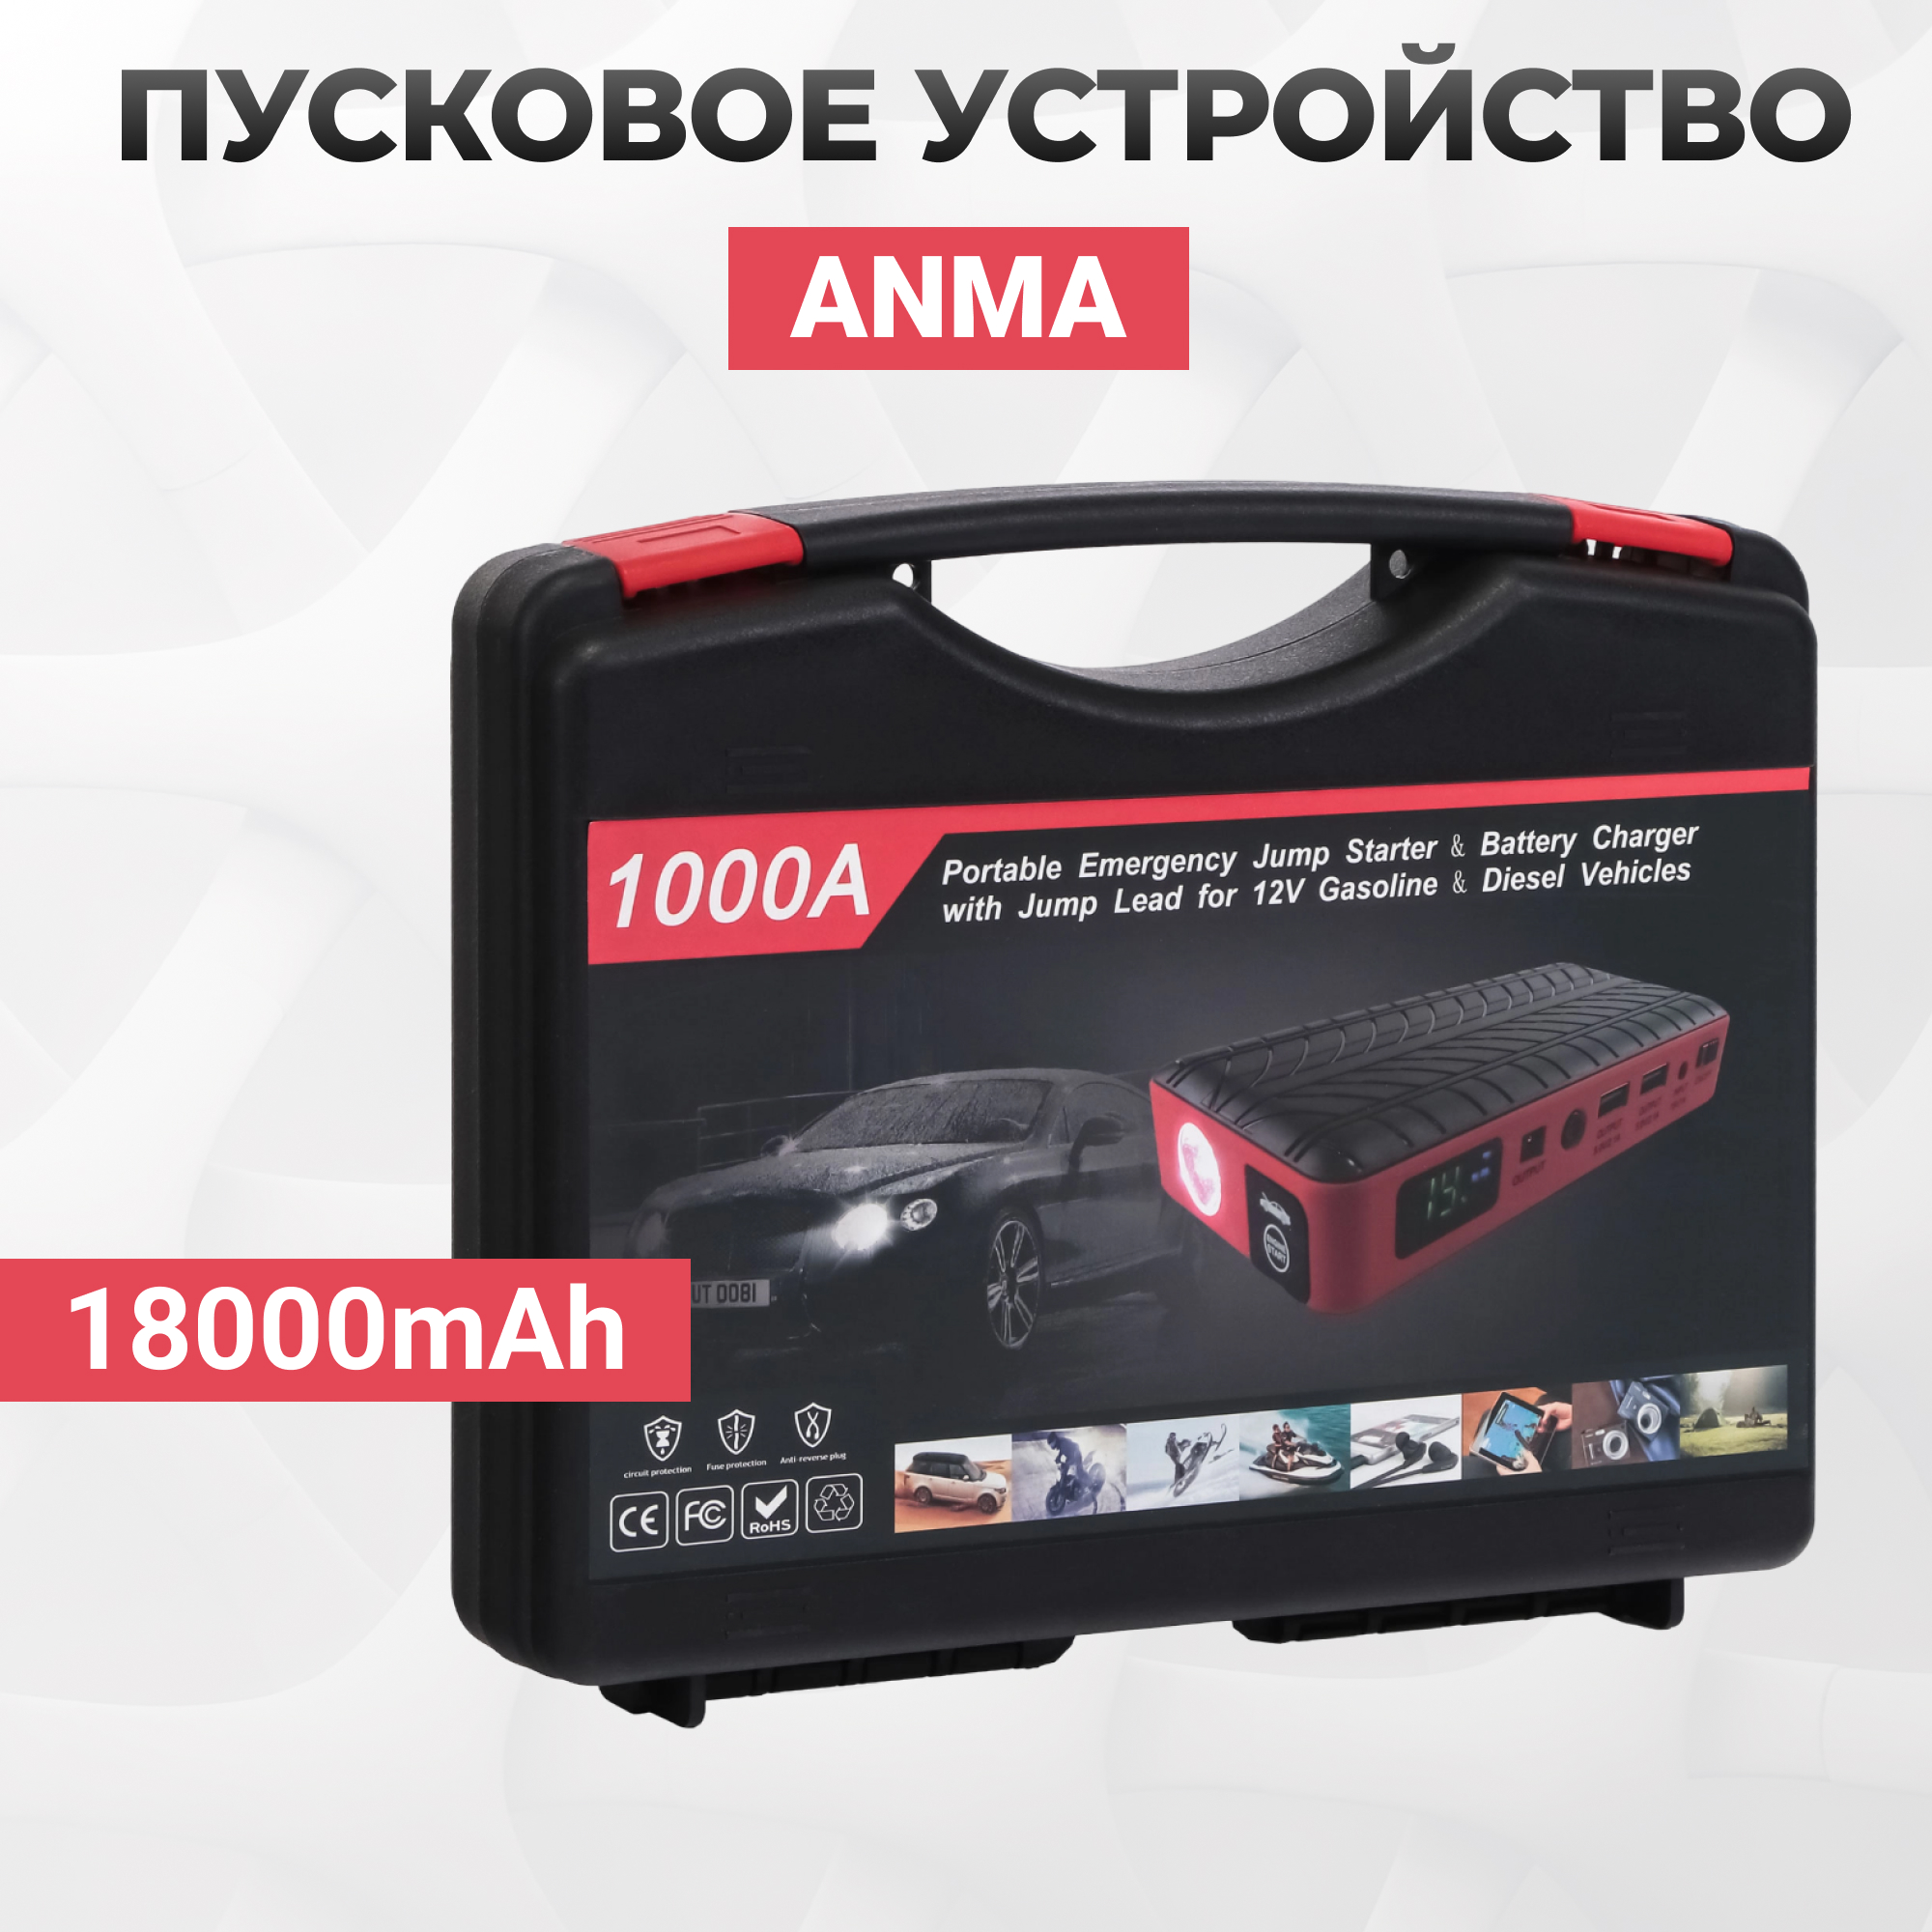 Пусковое устройство ANMA для авто 18000mAh, цвет красный - фото 2